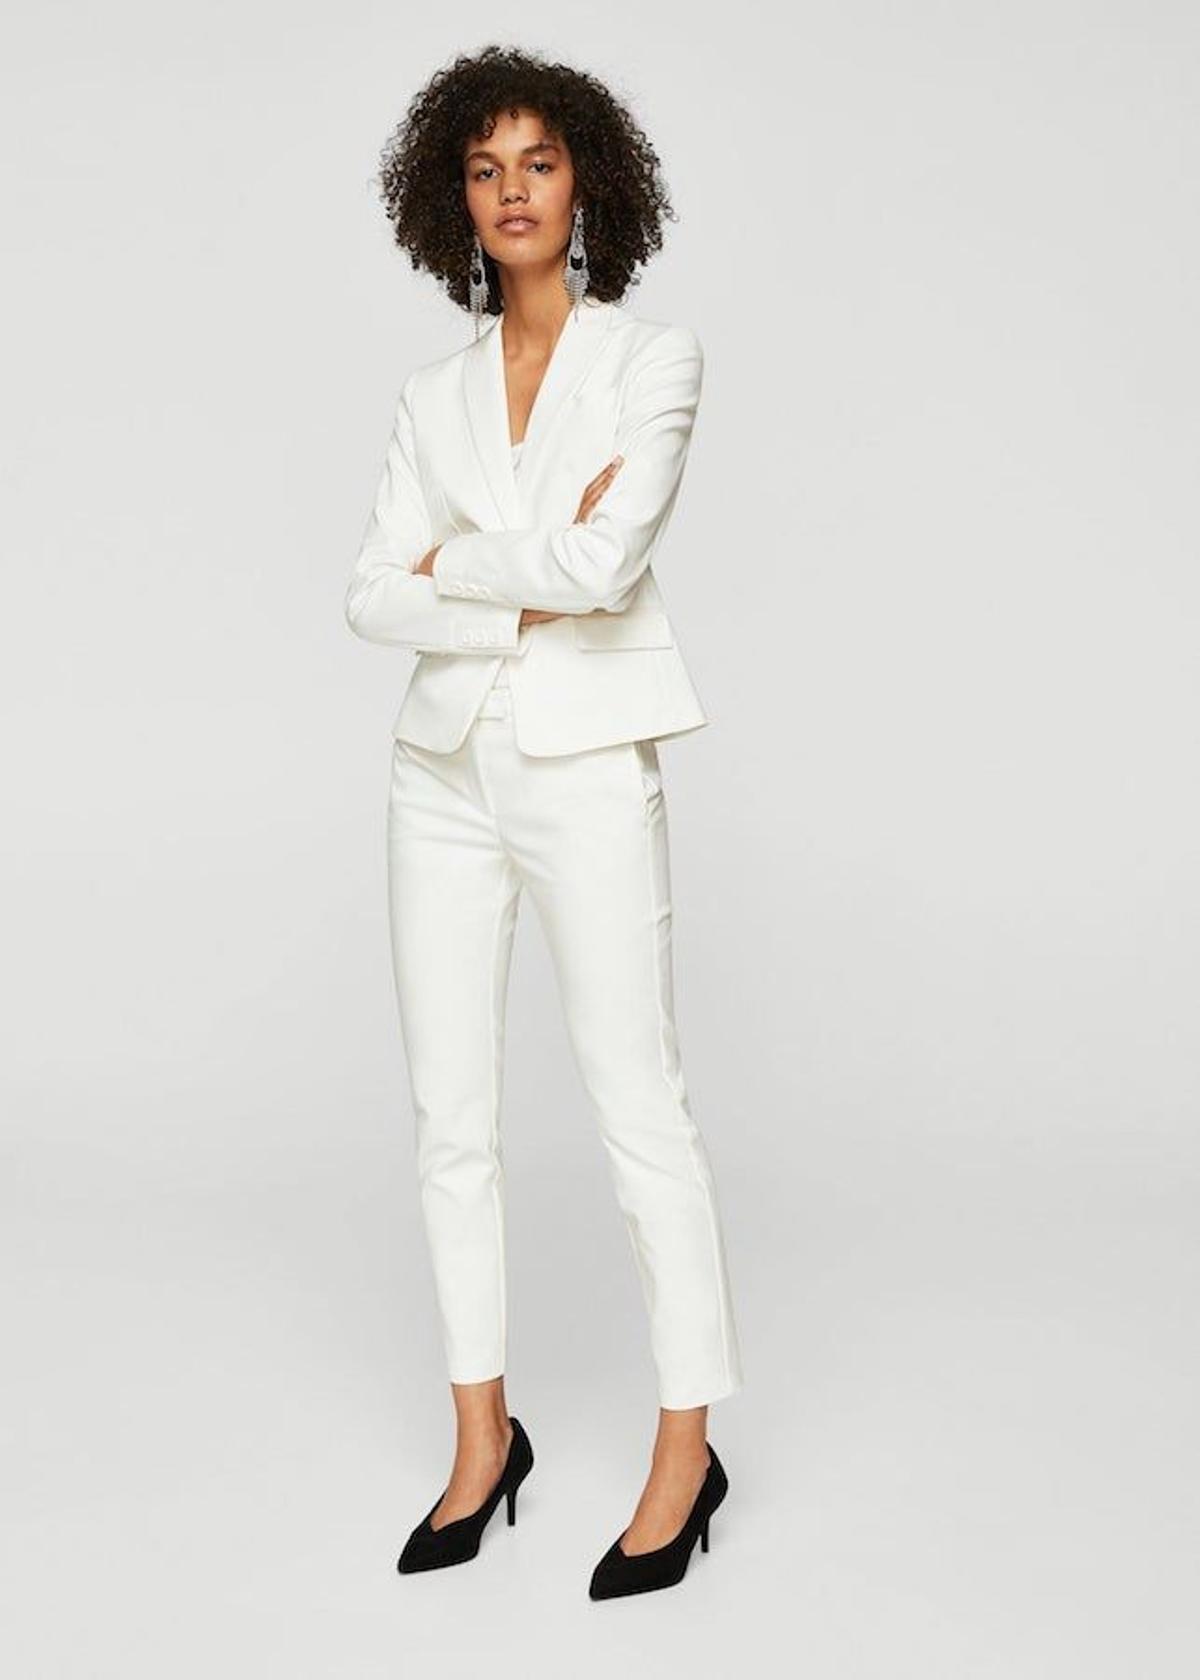 Traje de chaqueta y pantalón: el 'total white'